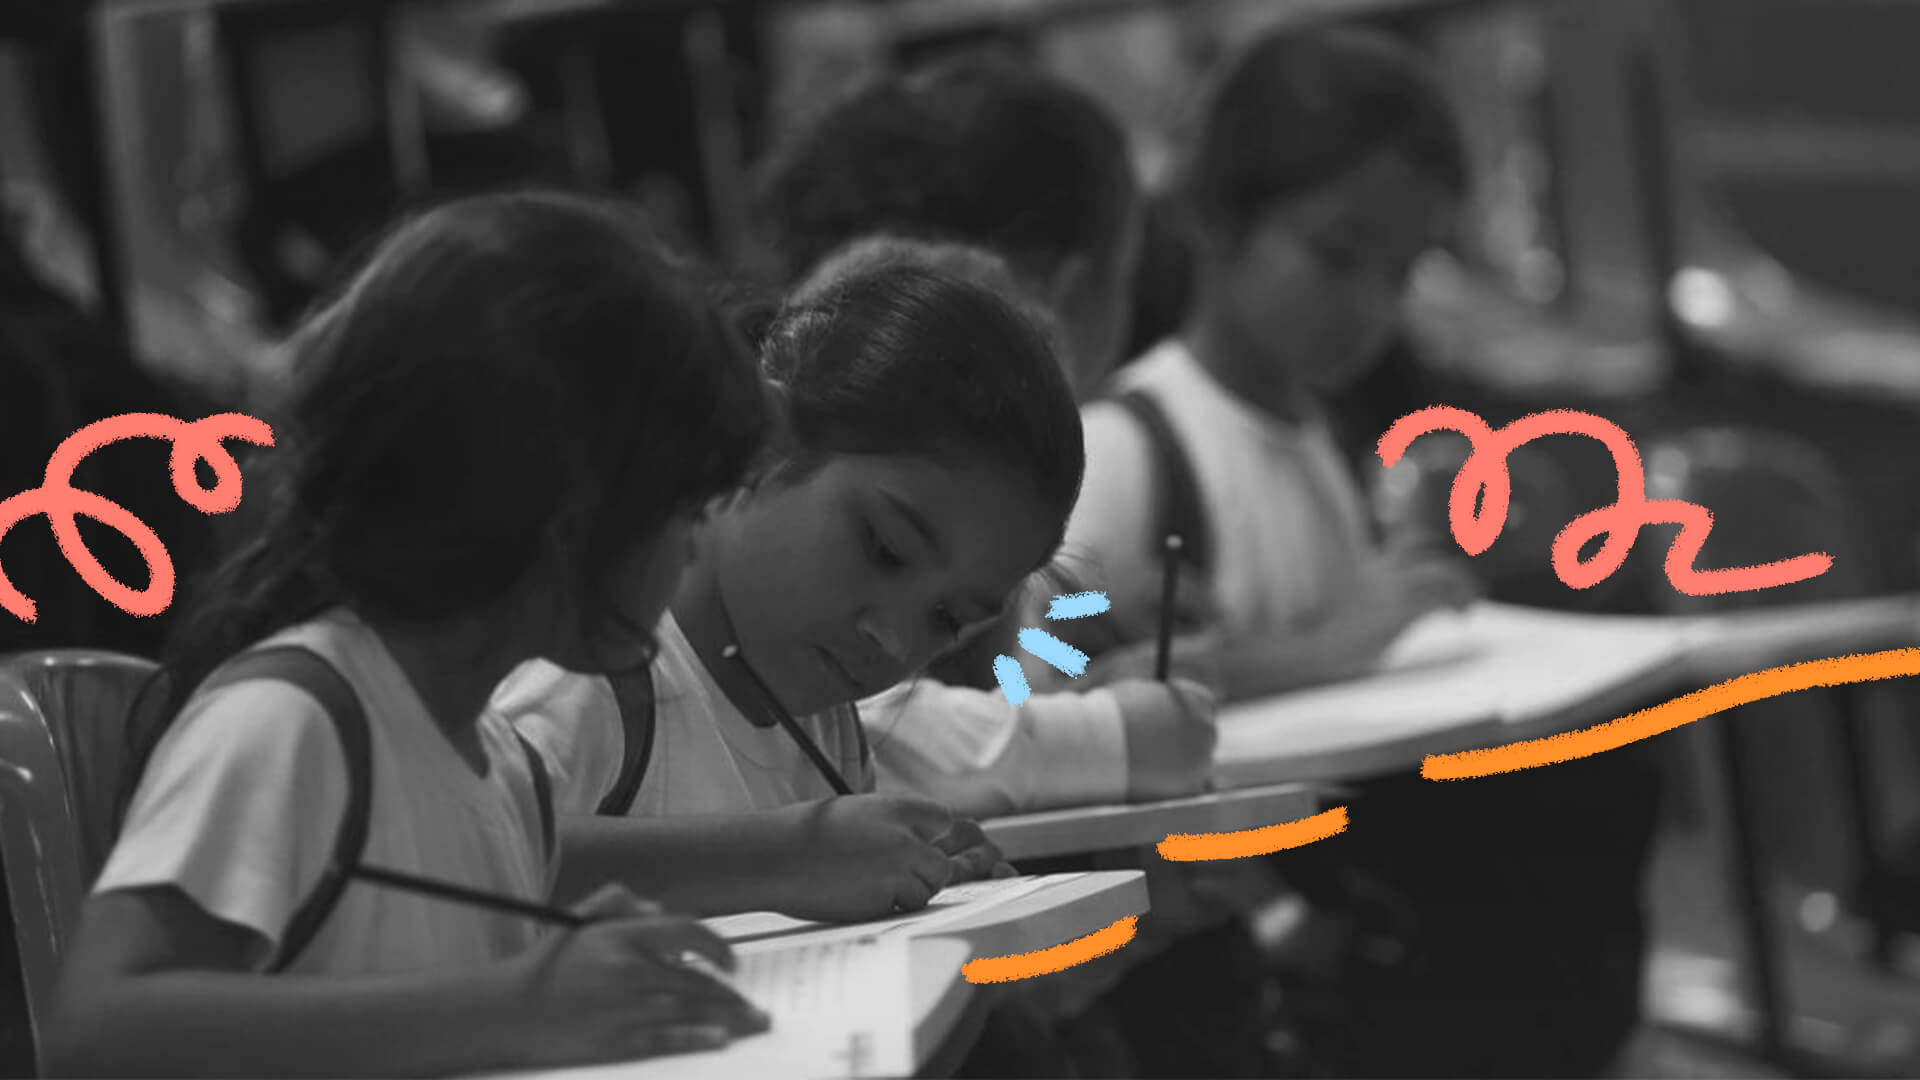 Imagem em preto e branco mostra duas meninas sentadas em sala de aula escrevendo com lápis em seus cadernos